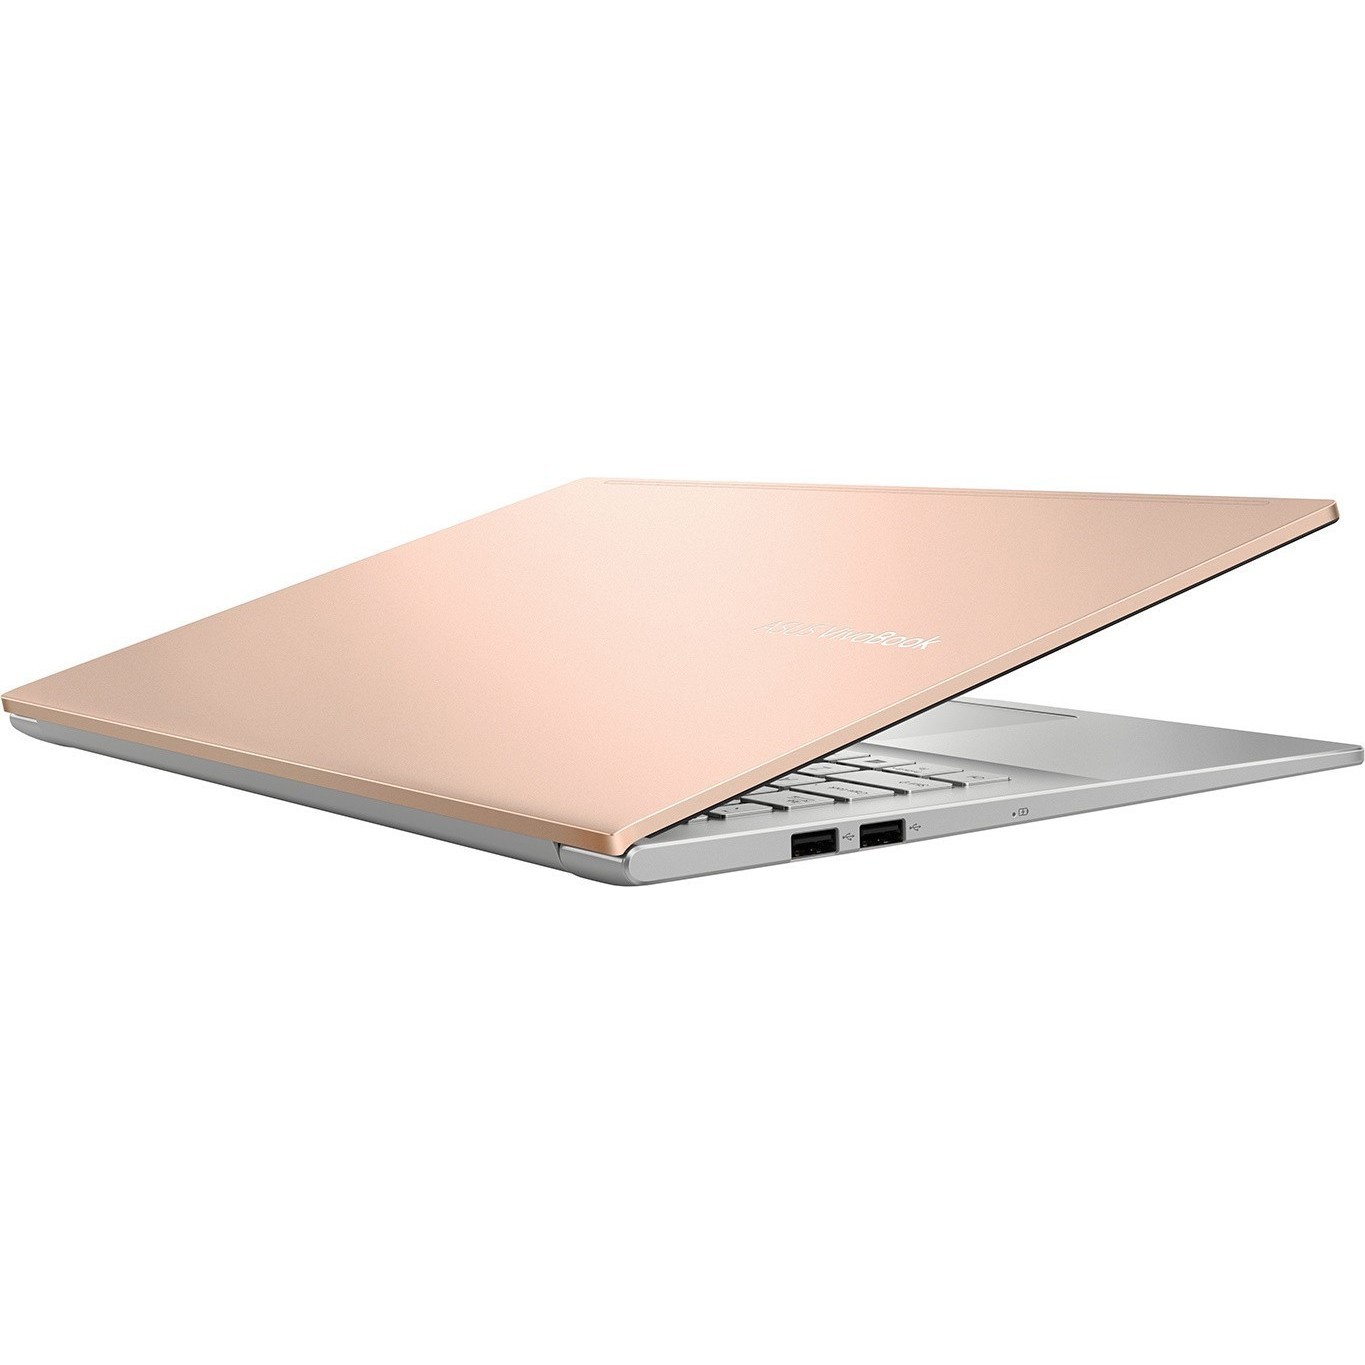 Ноутбук Asus Vivobook 15 M513ua Bq002t Купить